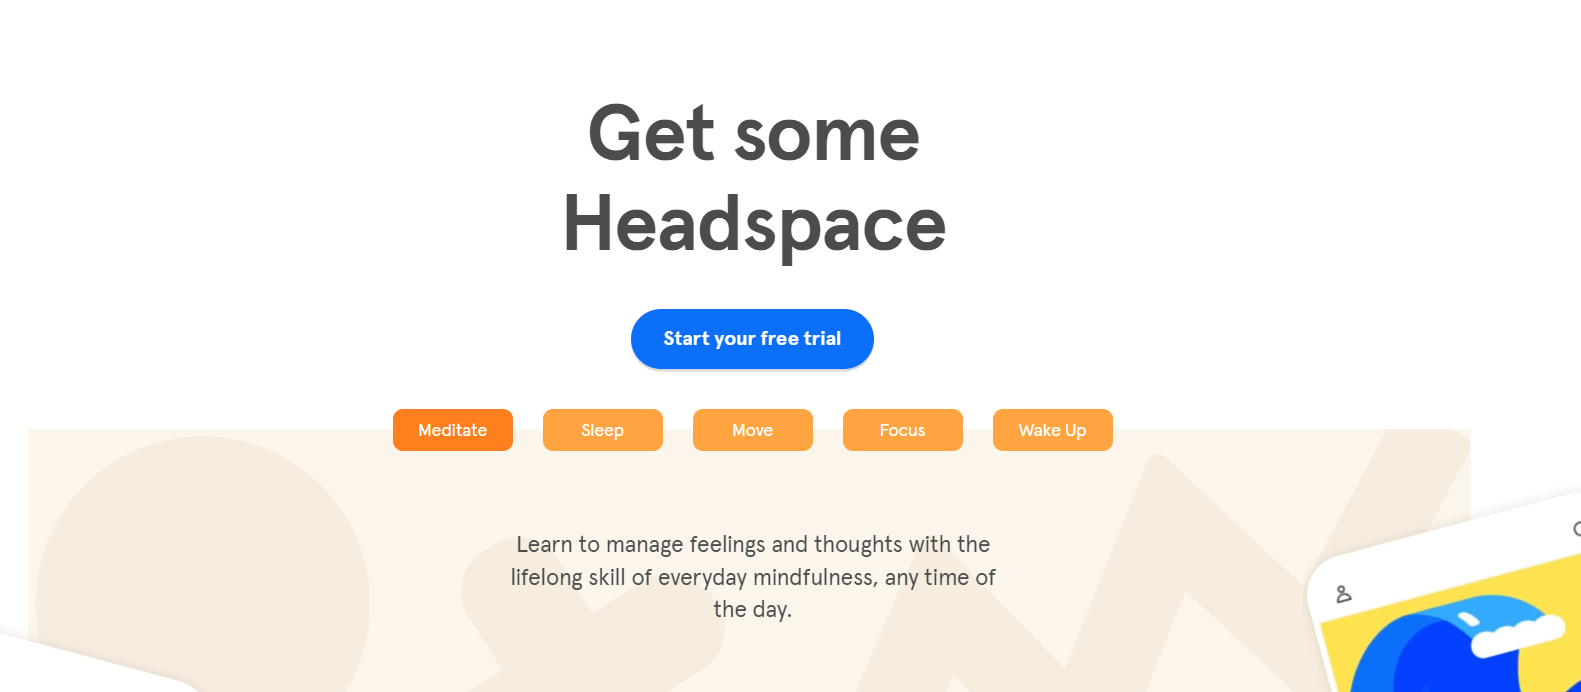 Trang chủ Headspace hiển thị một trong những ví dụ kêu gọi hành động hiệu quả nhất.